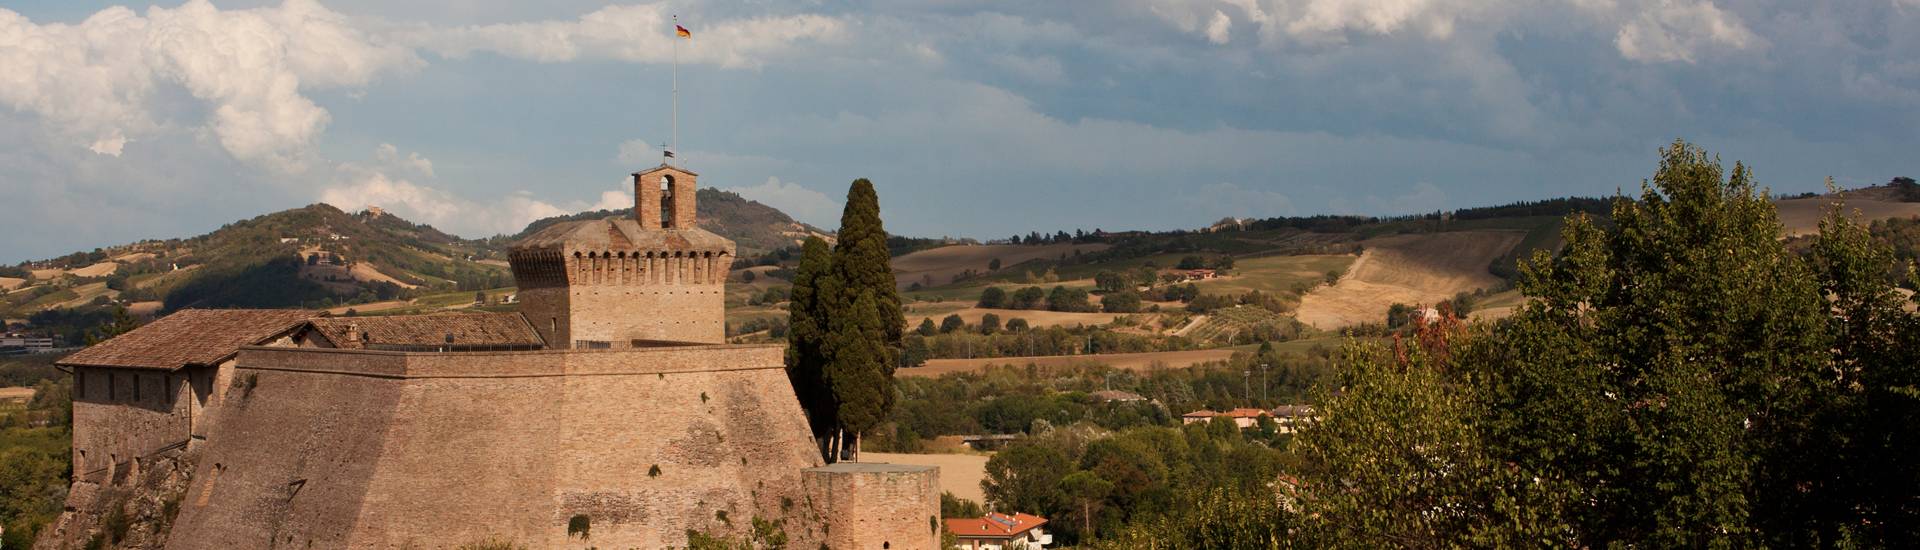 Rocca di Meldola - Rocca di Meldola foto di: |Umberto Paganini Paganelli| - Wiki Loves Monuments 2017